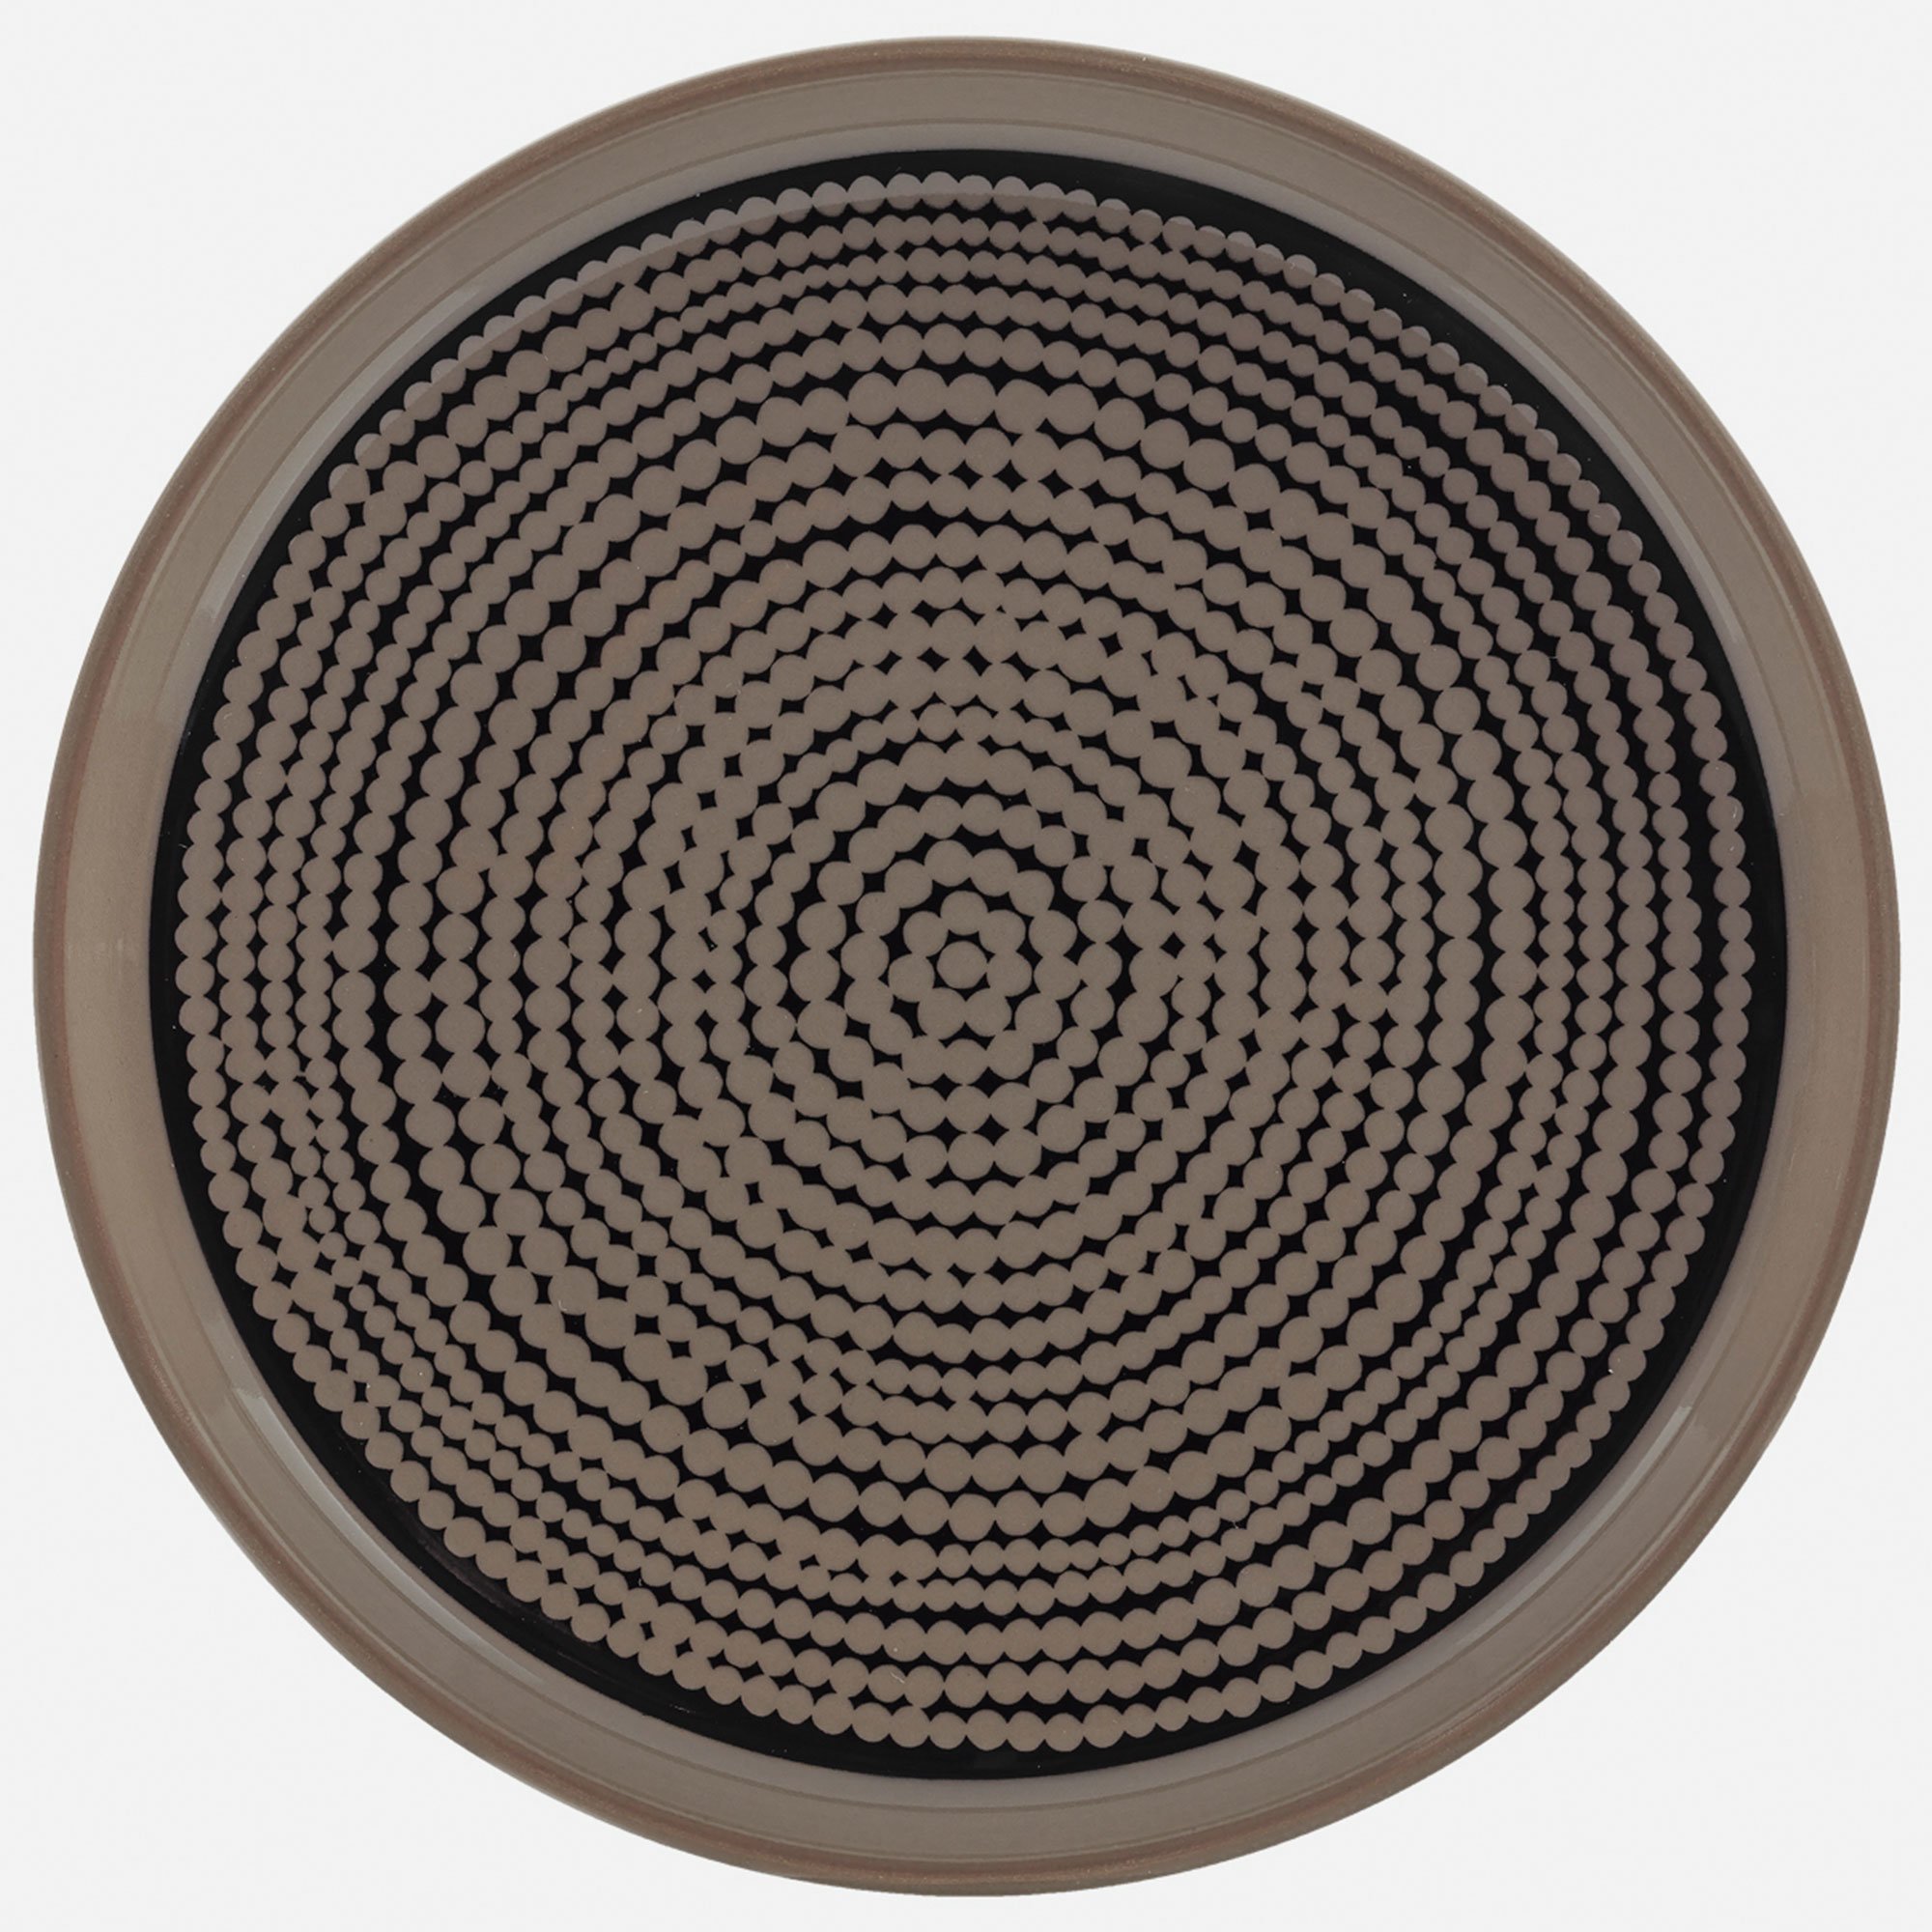 Marimekko Siirtolapuutarha tallerken, Ø 13,5 cm, terra/sort